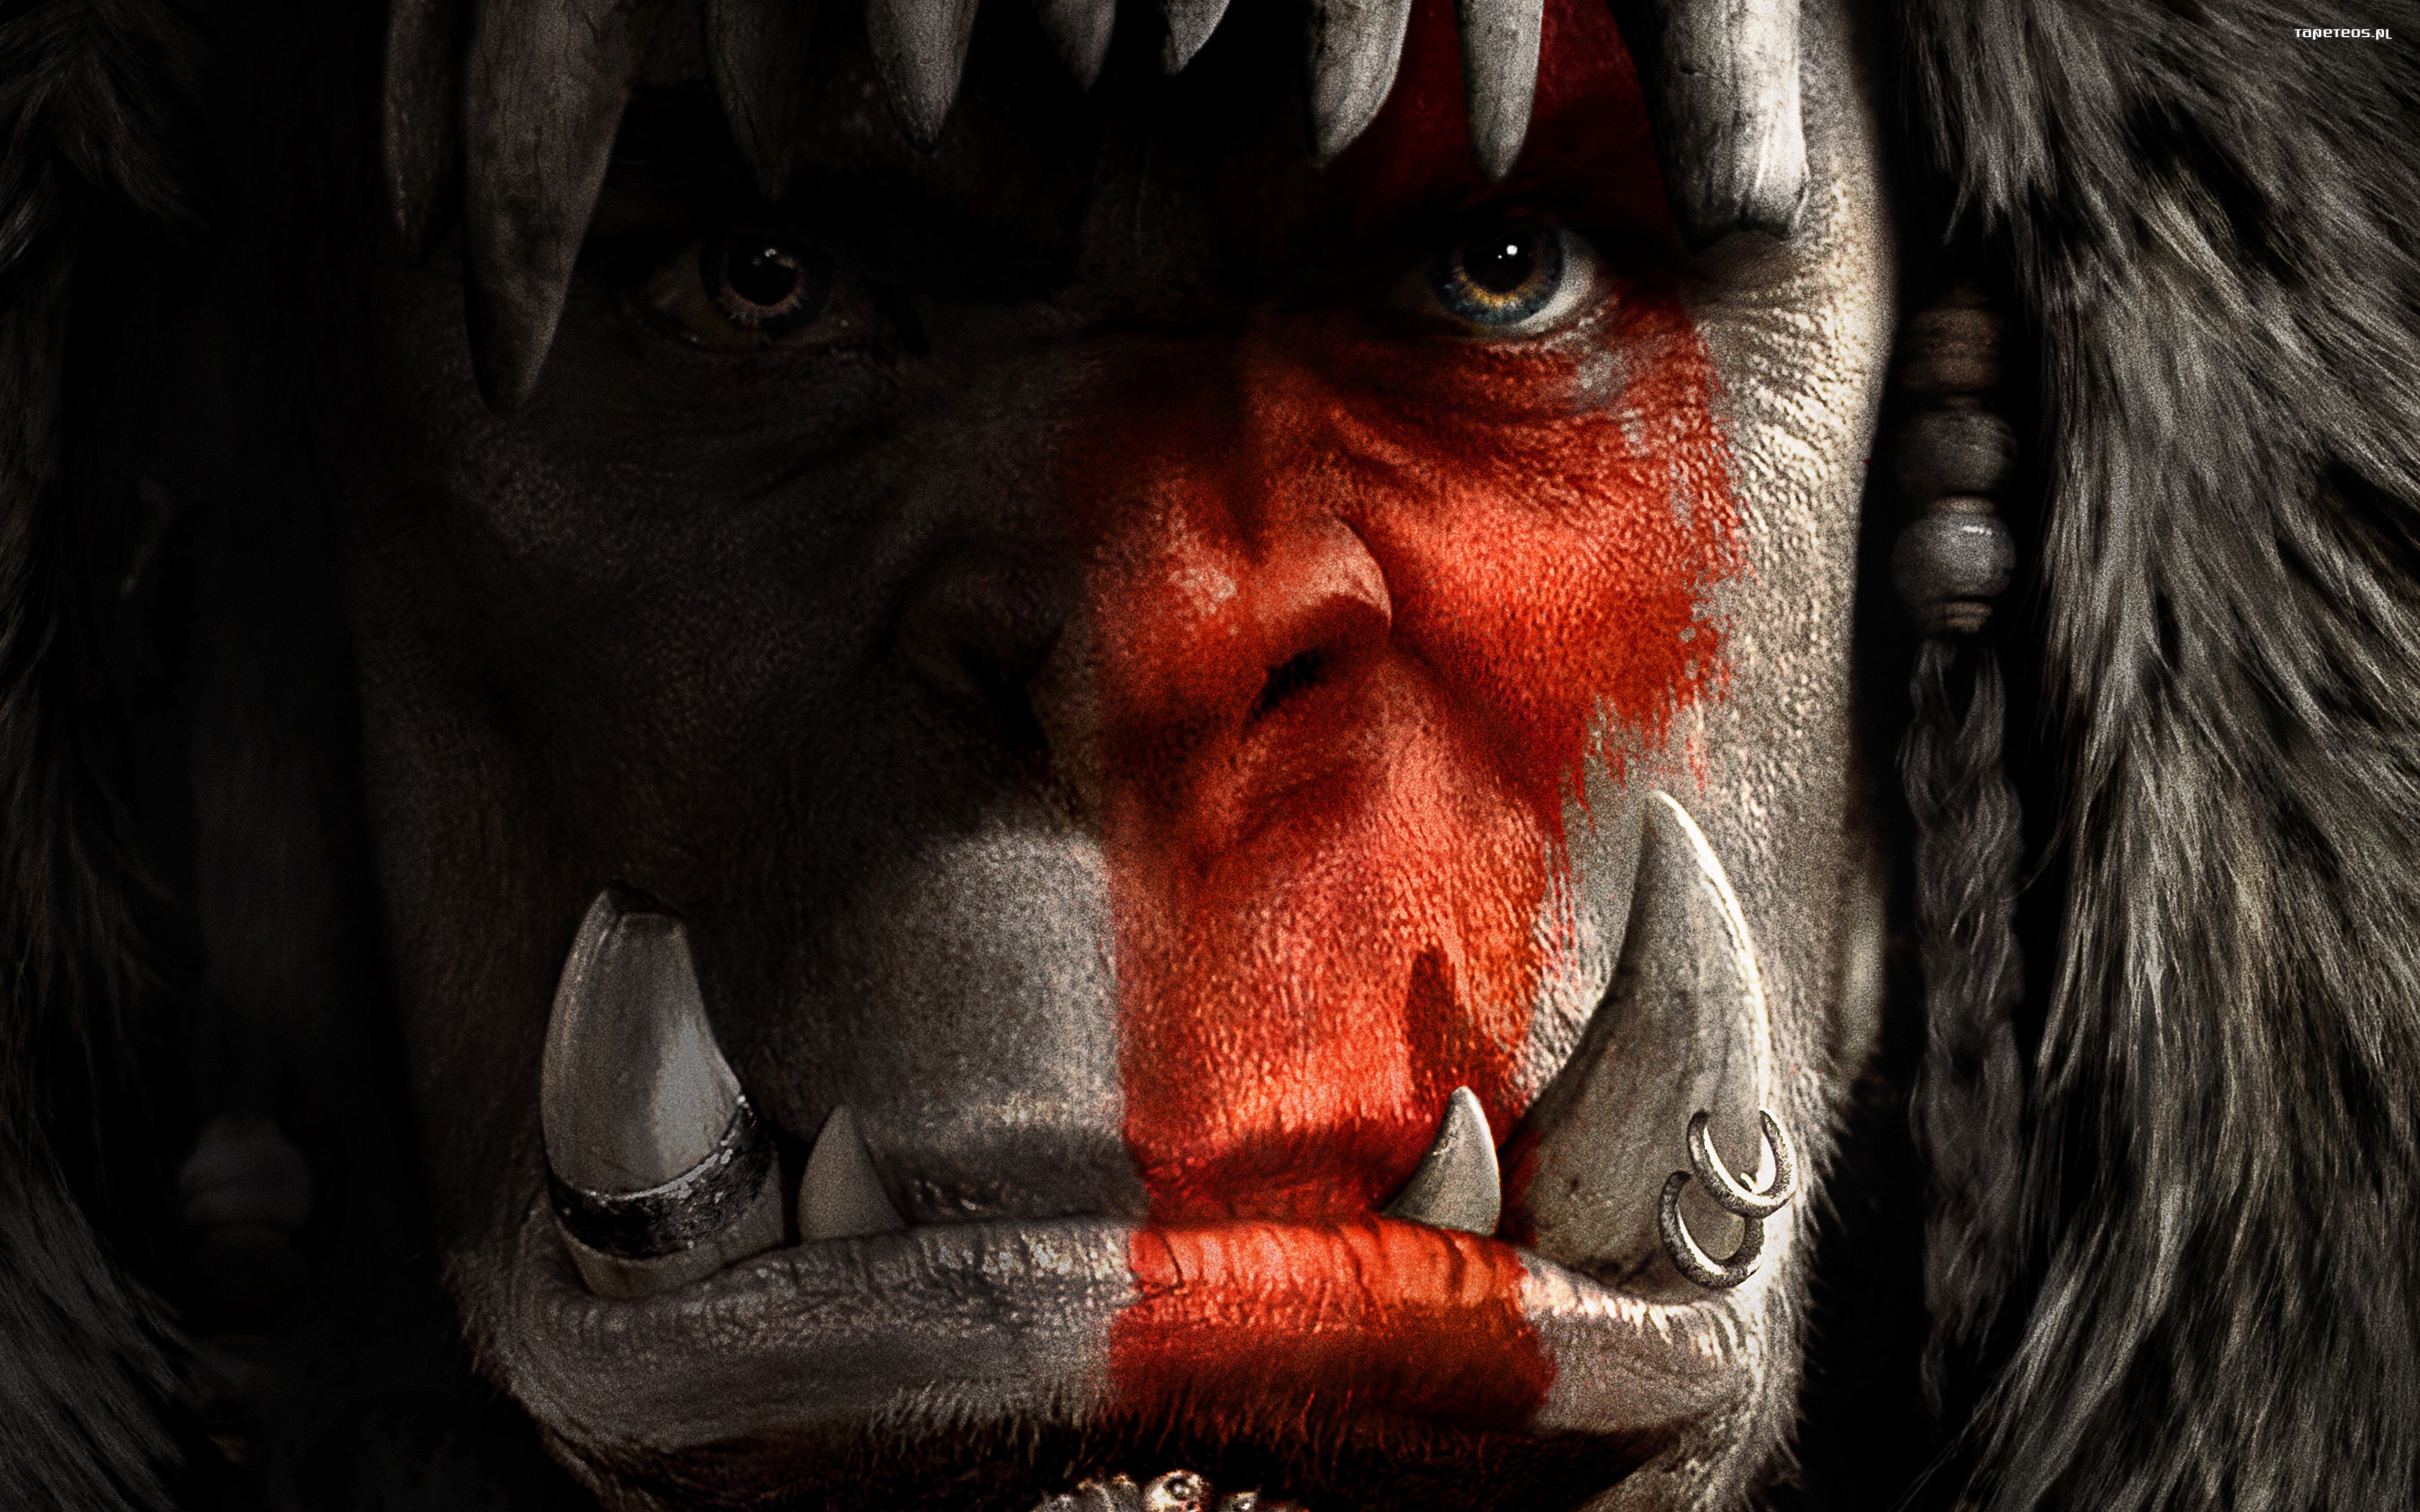 Warcraft Poczatek (2016) 003 Toby Kebbell jako Durotan